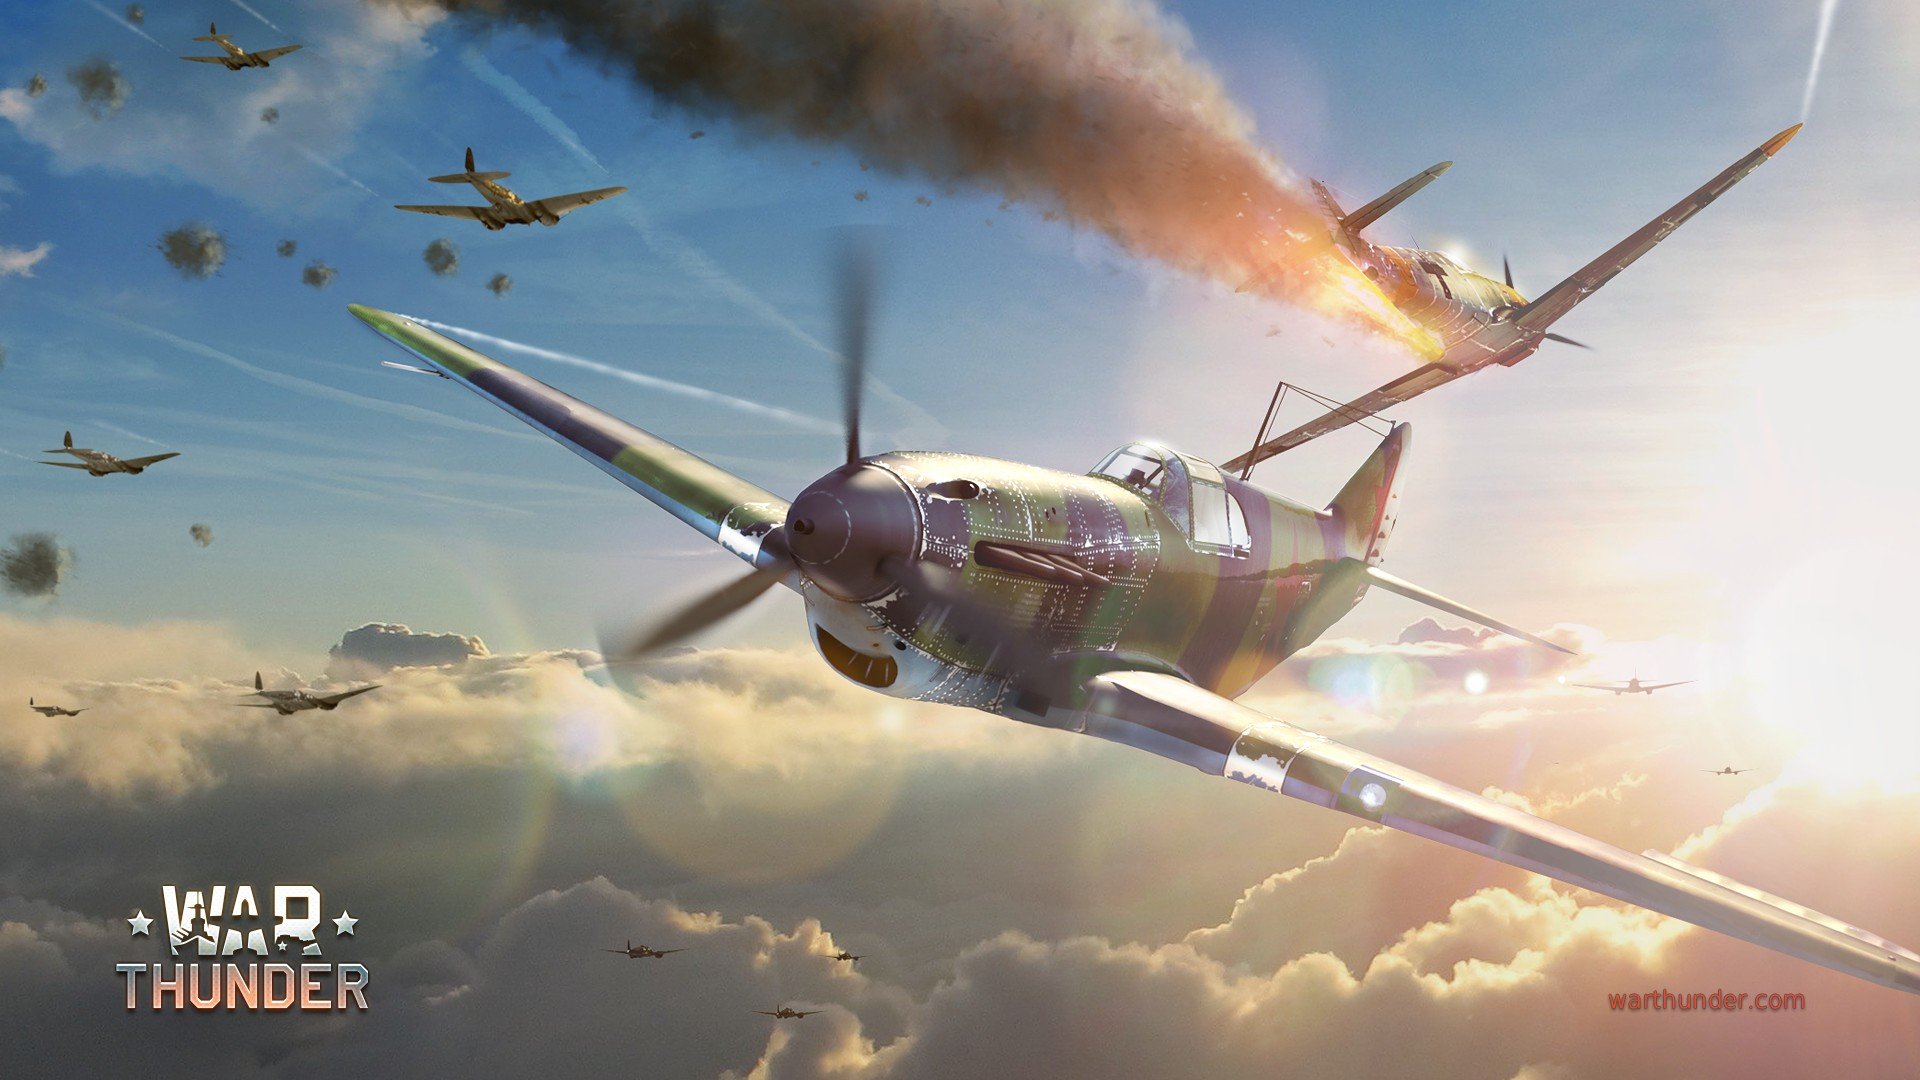 war thunder wallpaper,aircraft,airplane,aviation,vehicle,military aircraft